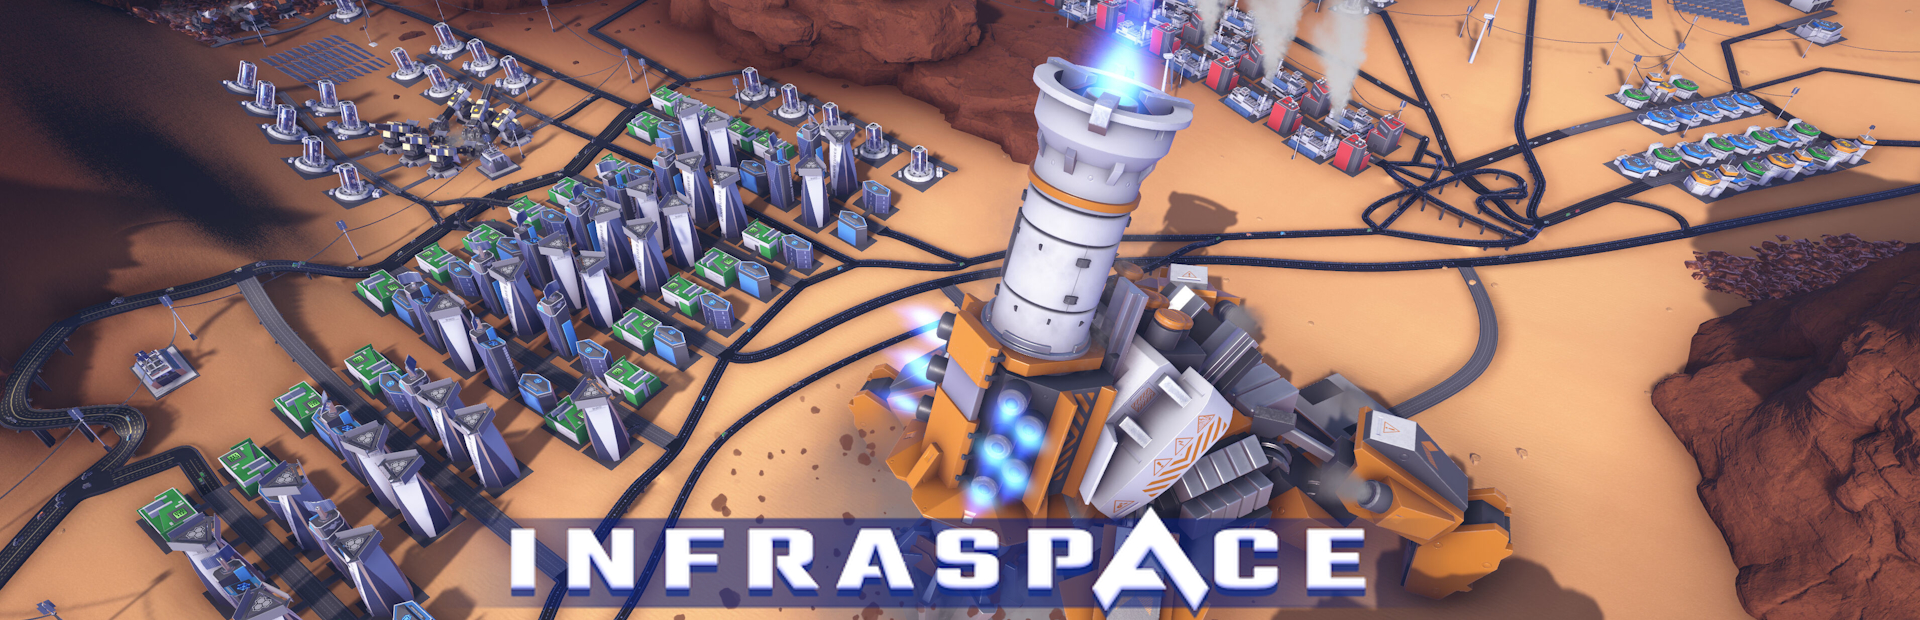 دانلود بازی InfraSpace برای پی سی | گیمباتو